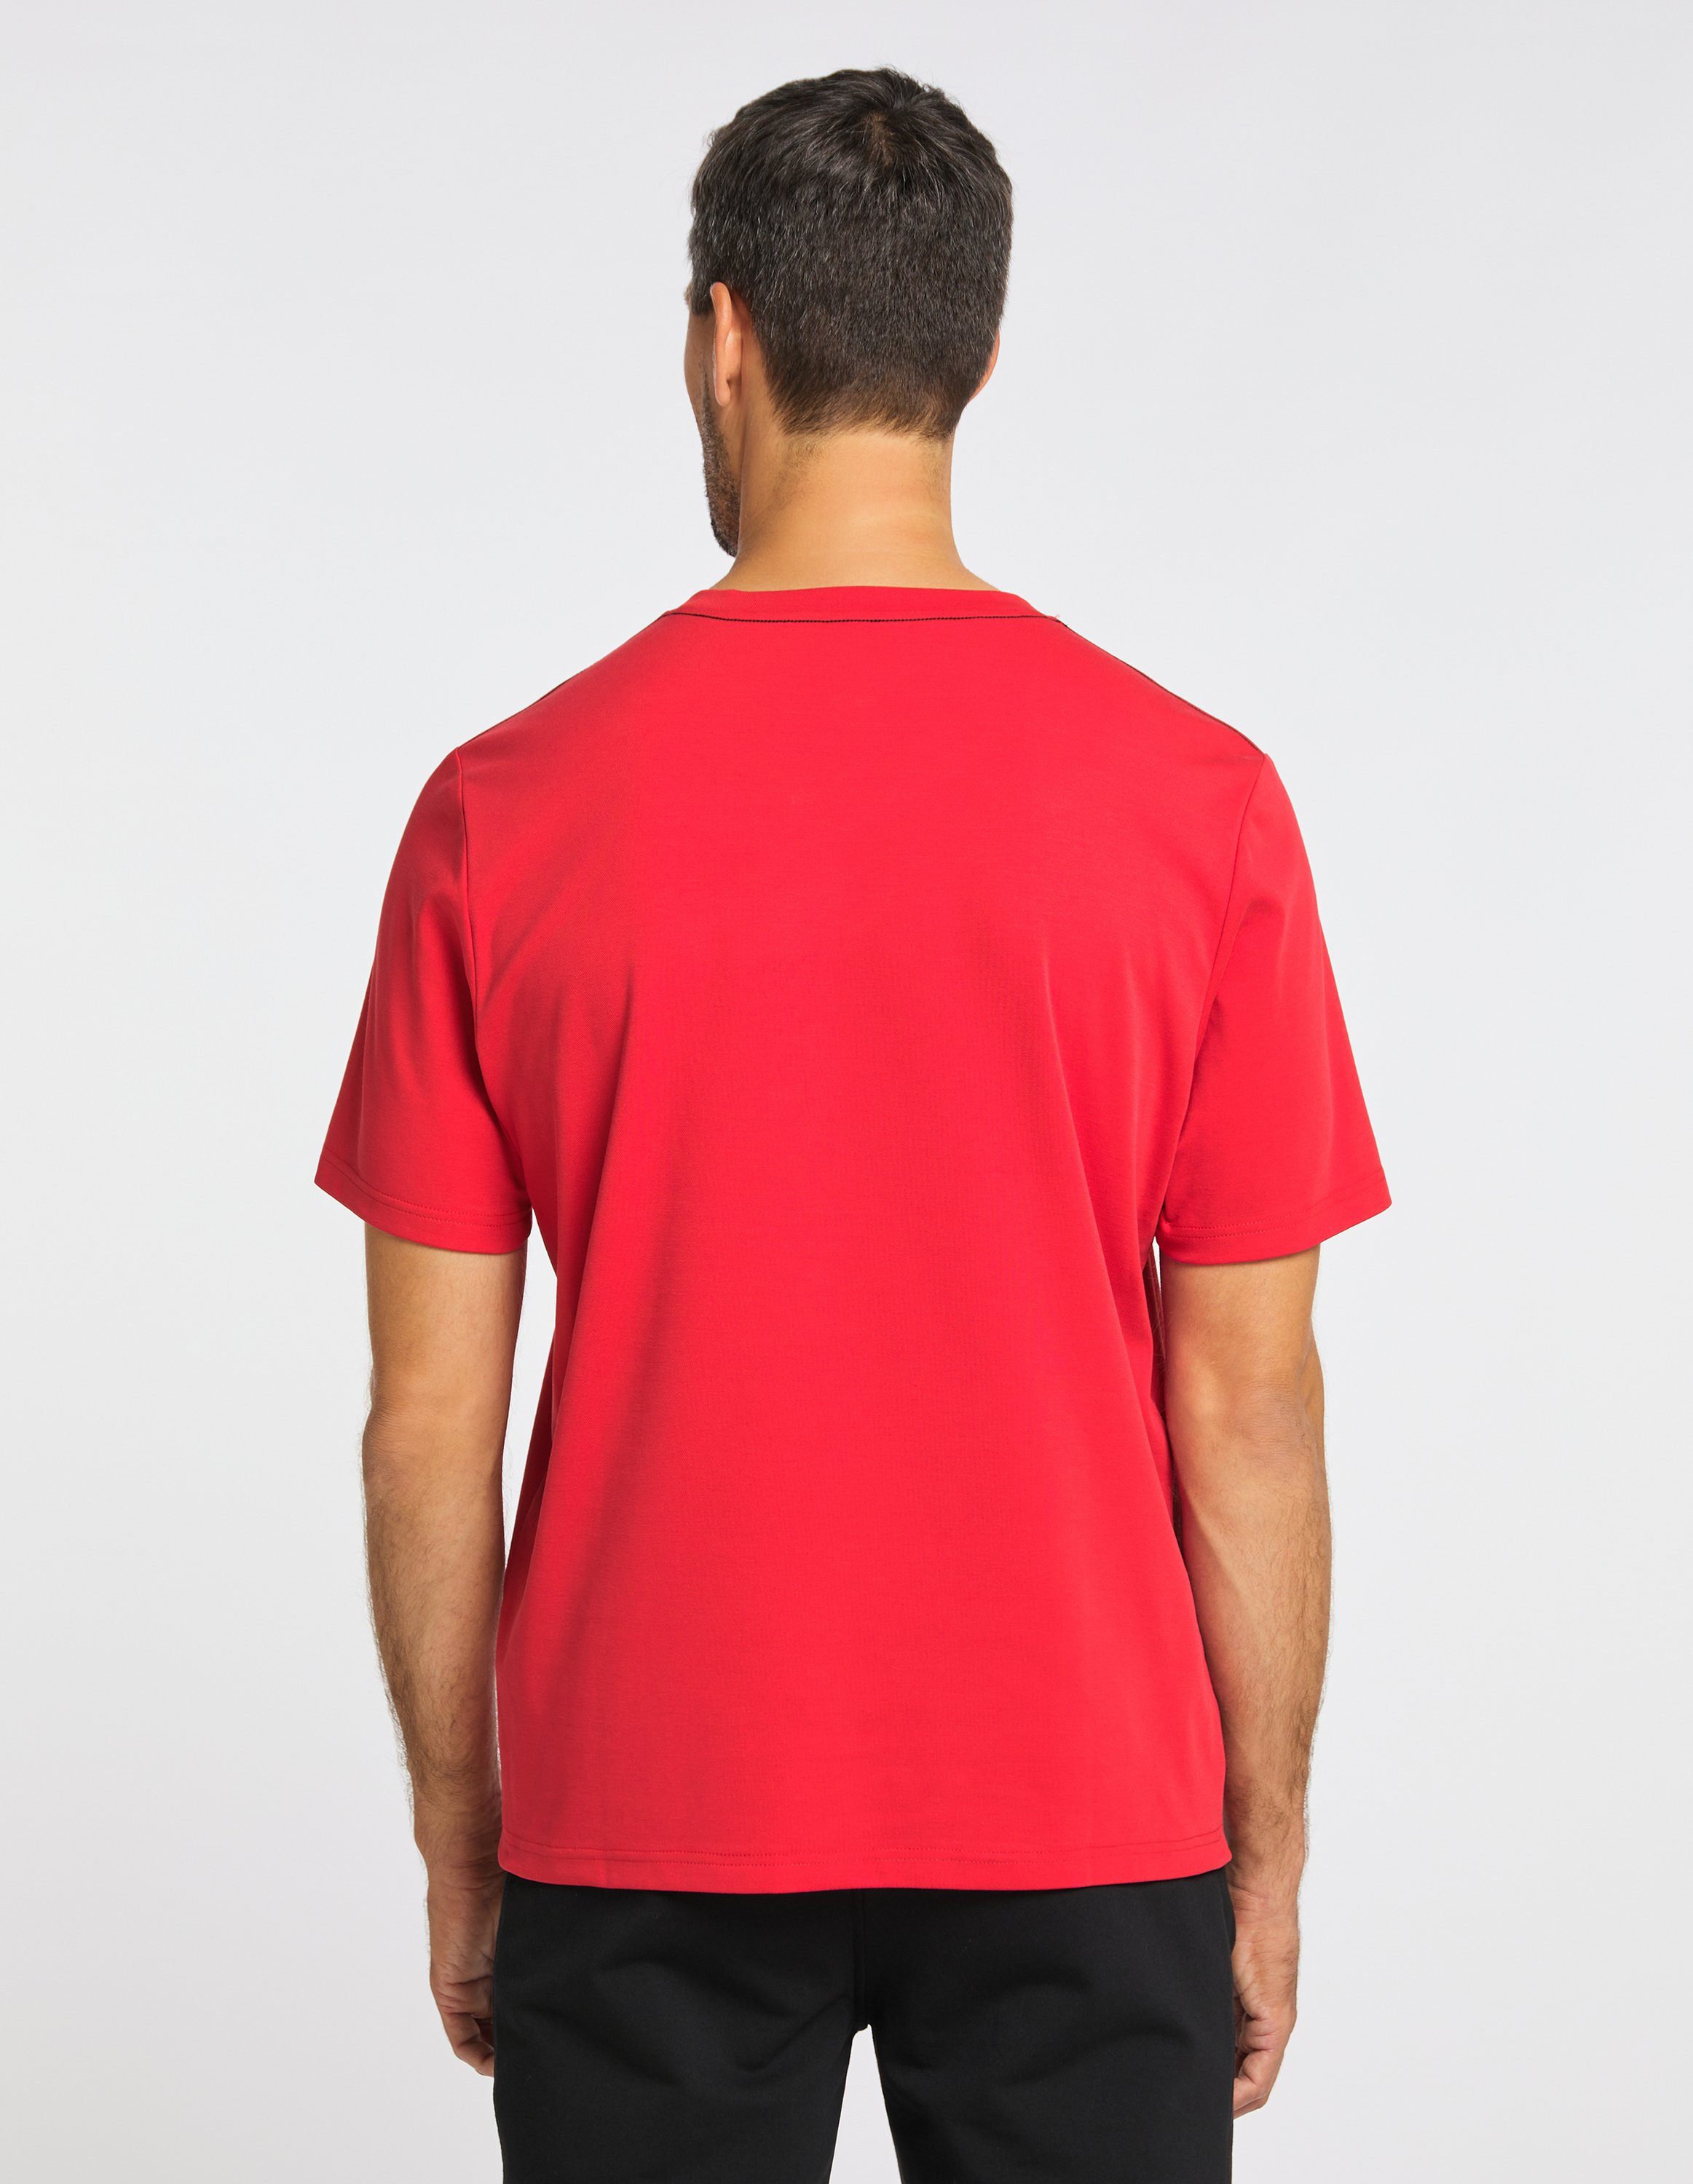 T-Shirt T-Shirt red Sportswear Joy fiery MANUEL